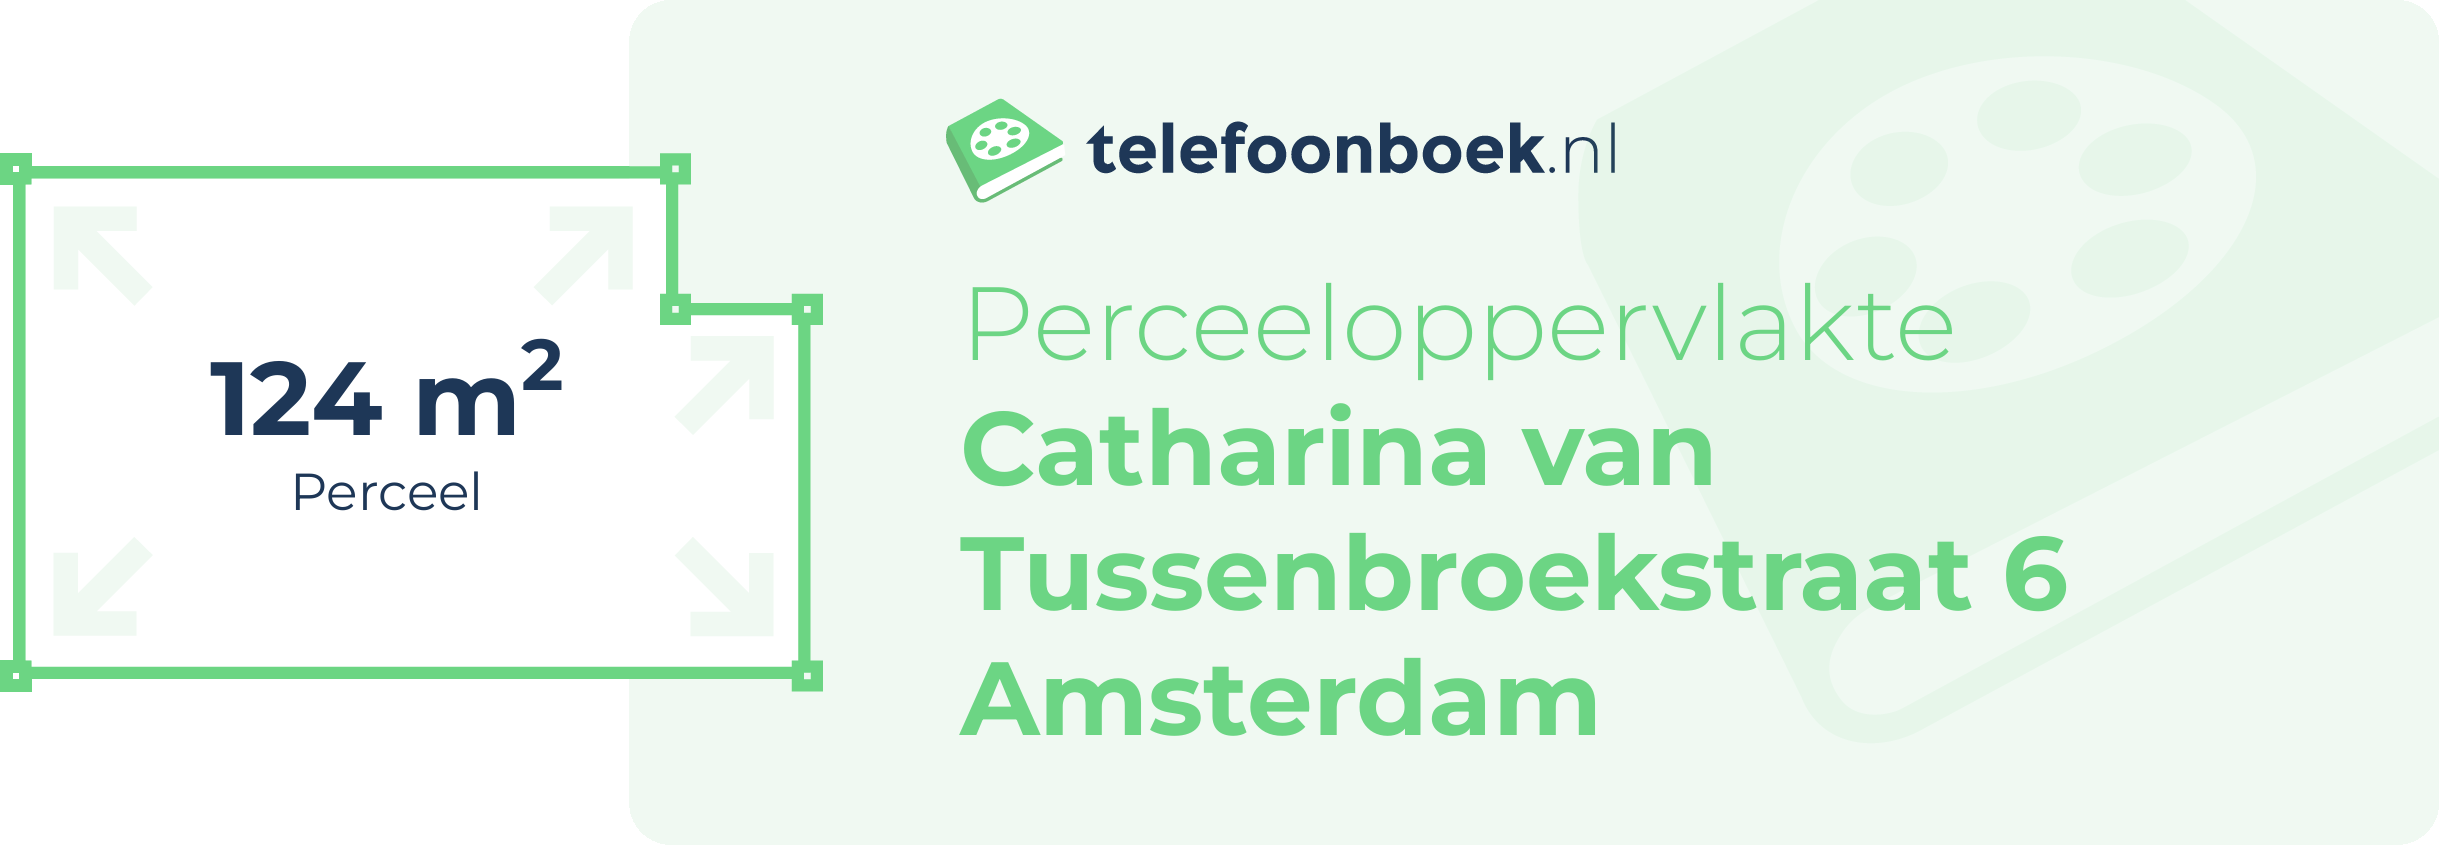 Perceeloppervlakte Catharina Van Tussenbroekstraat 6 Amsterdam